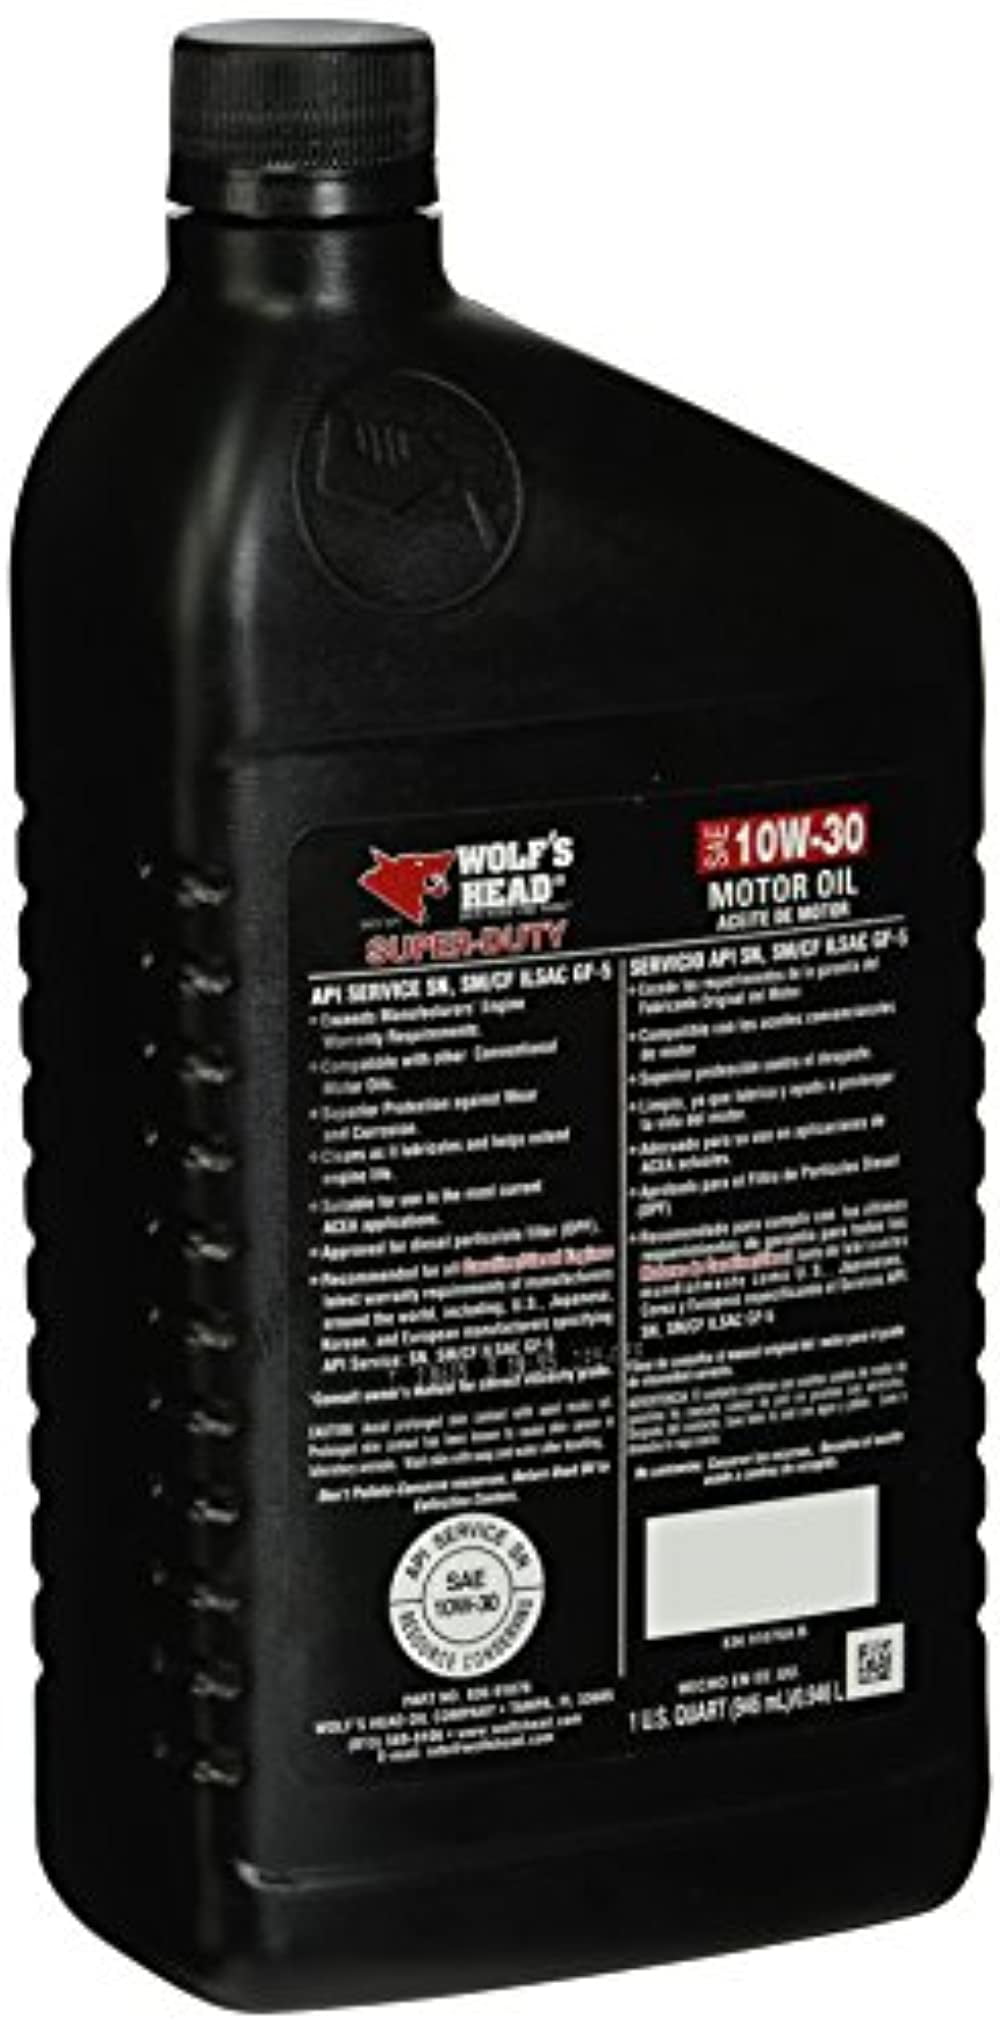 Wolfs Head Motor Oil Super-Duty 10W30 Motor Oil (1 Quart 